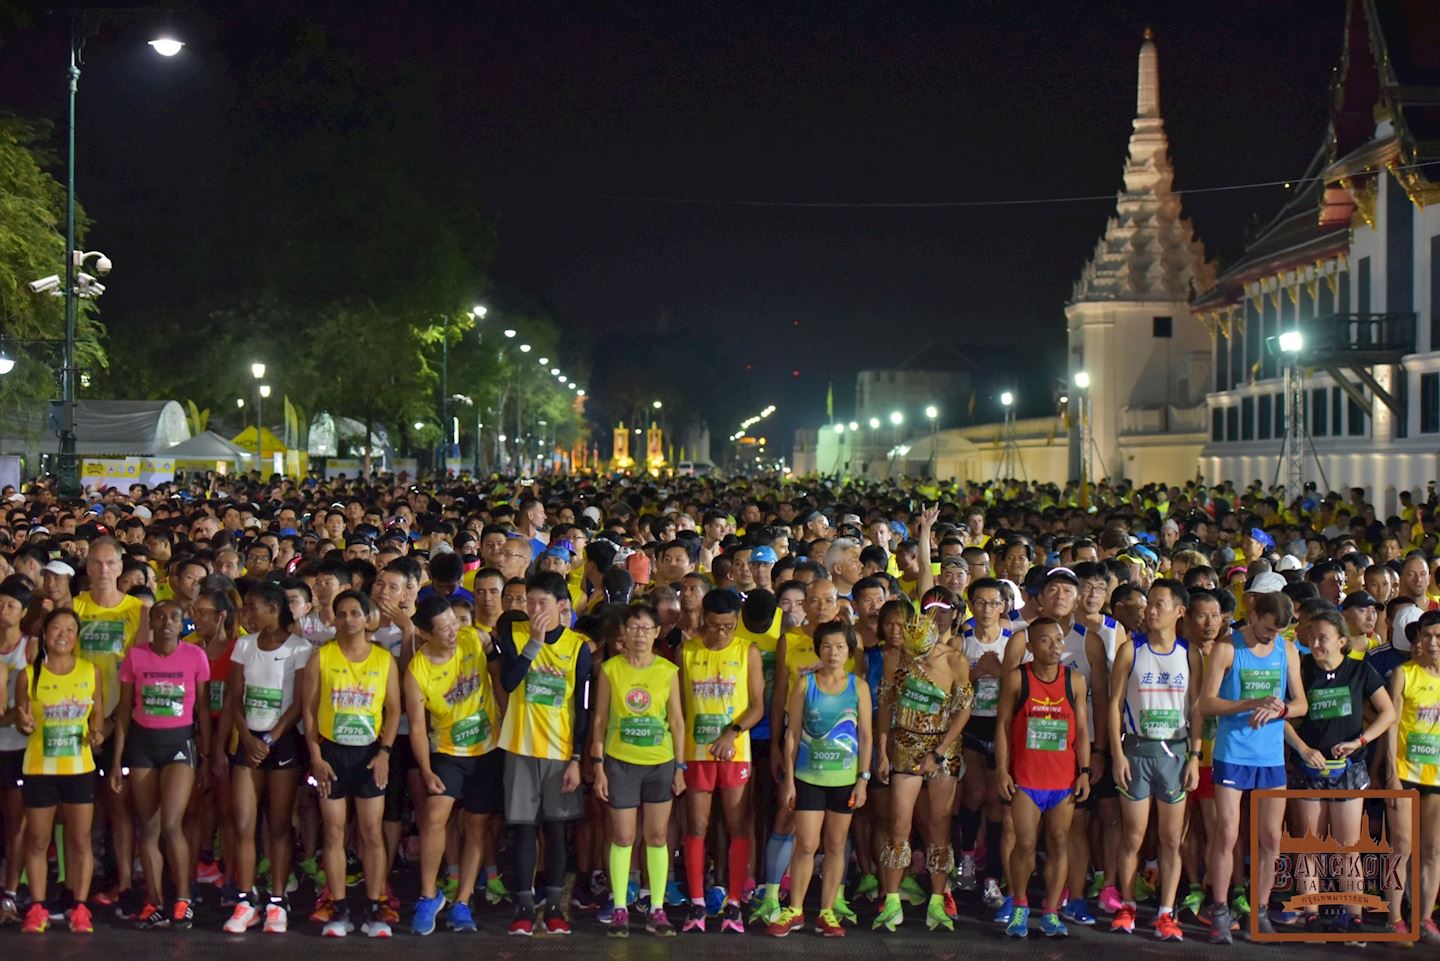 bangkok marathon bkk